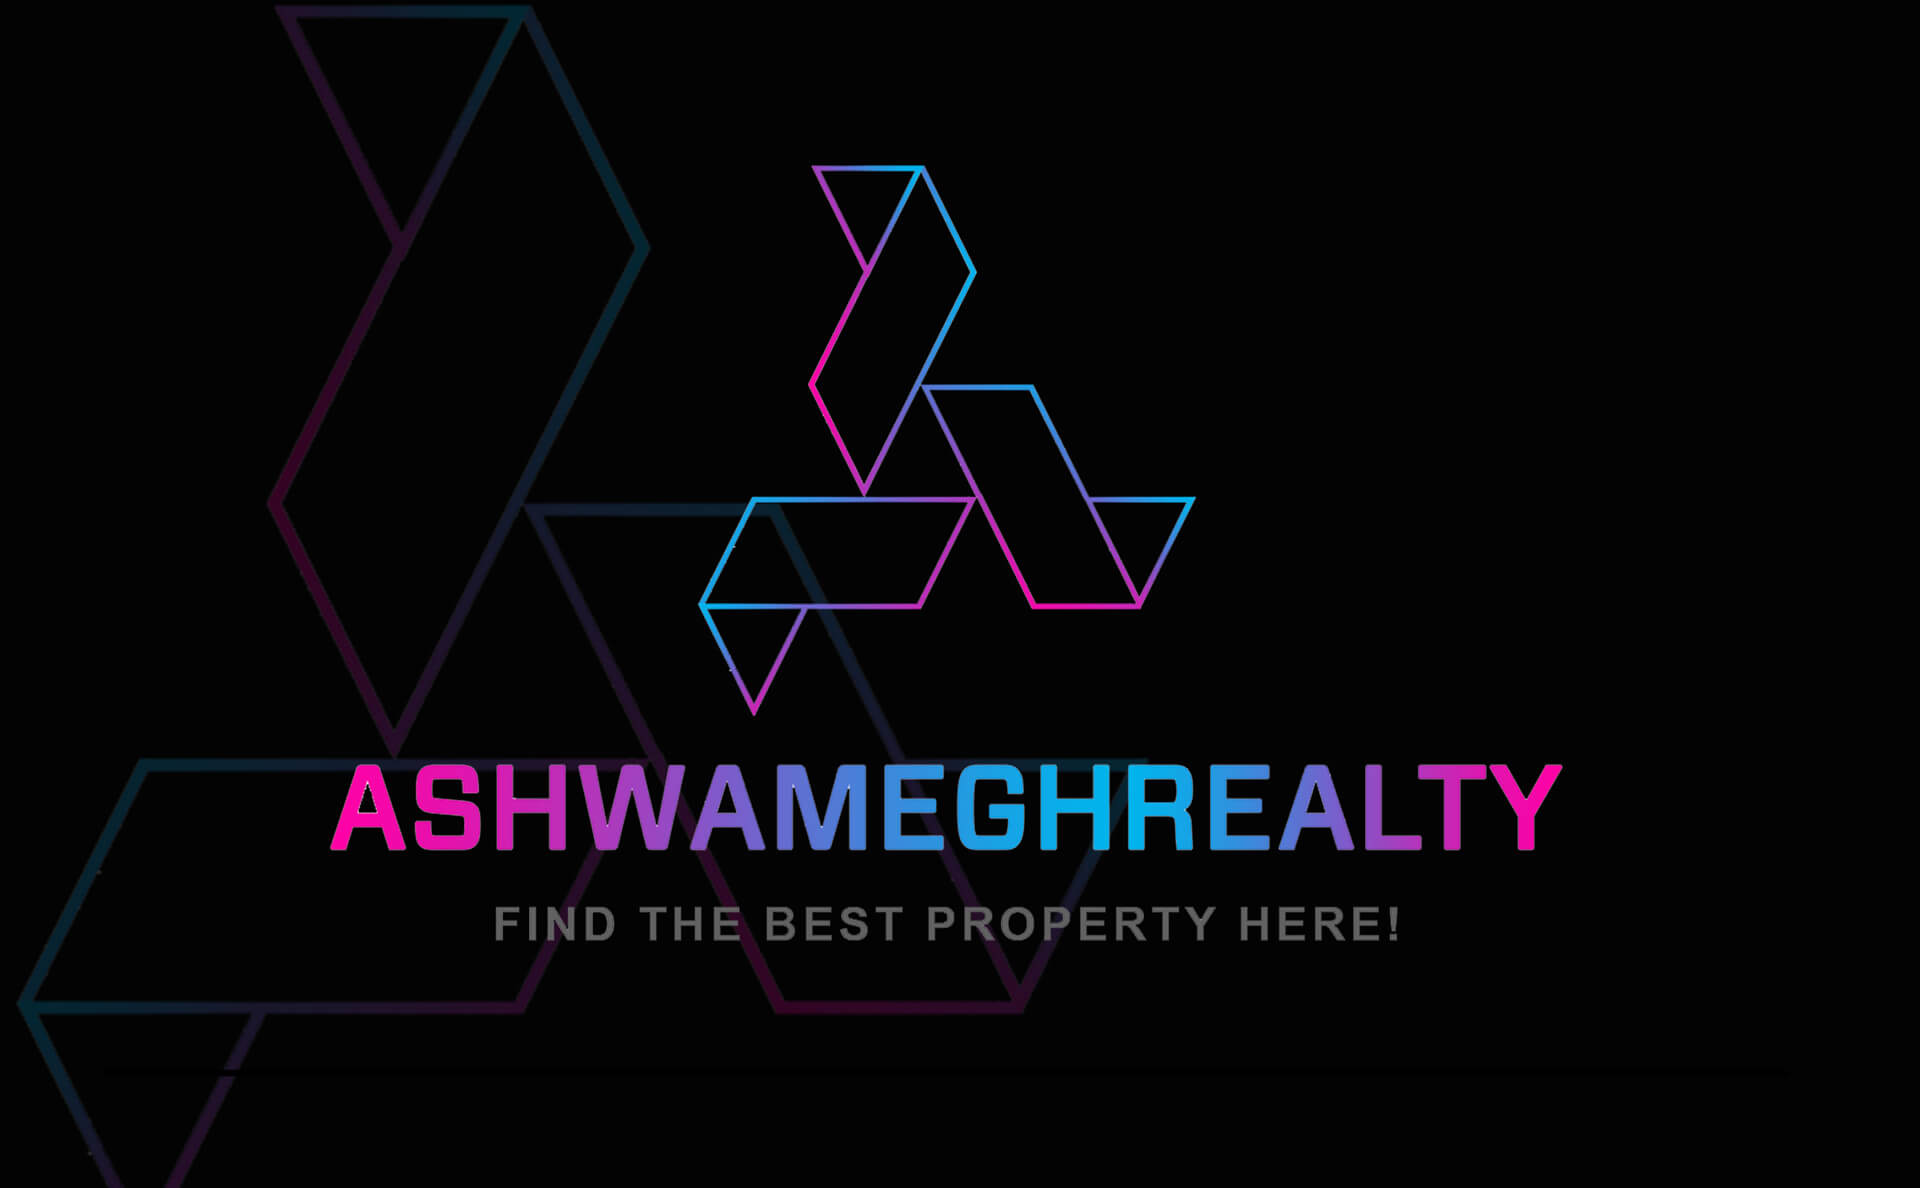 ashwamegh-realty